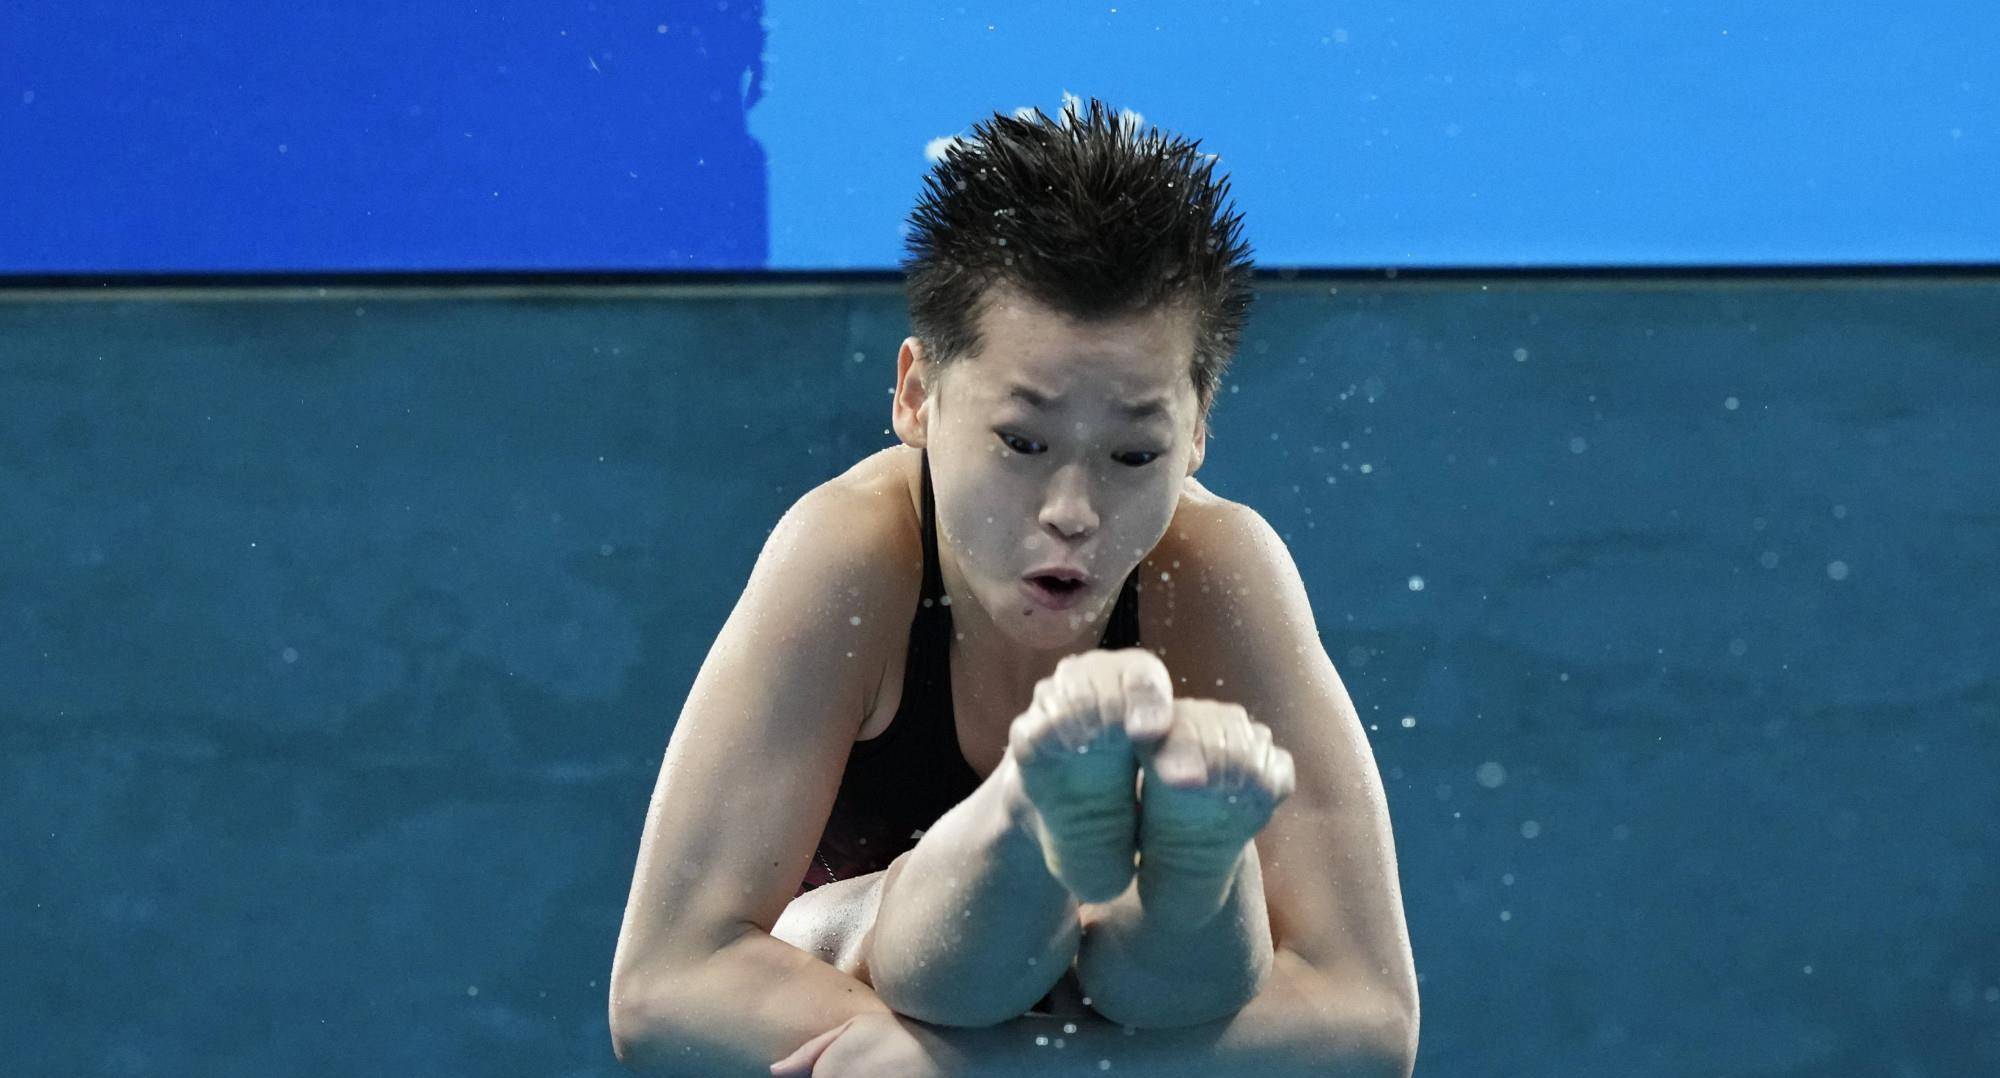 14岁跳水冠军全红婵,动作惊艳世界,她的背后故事曝光让人心疼